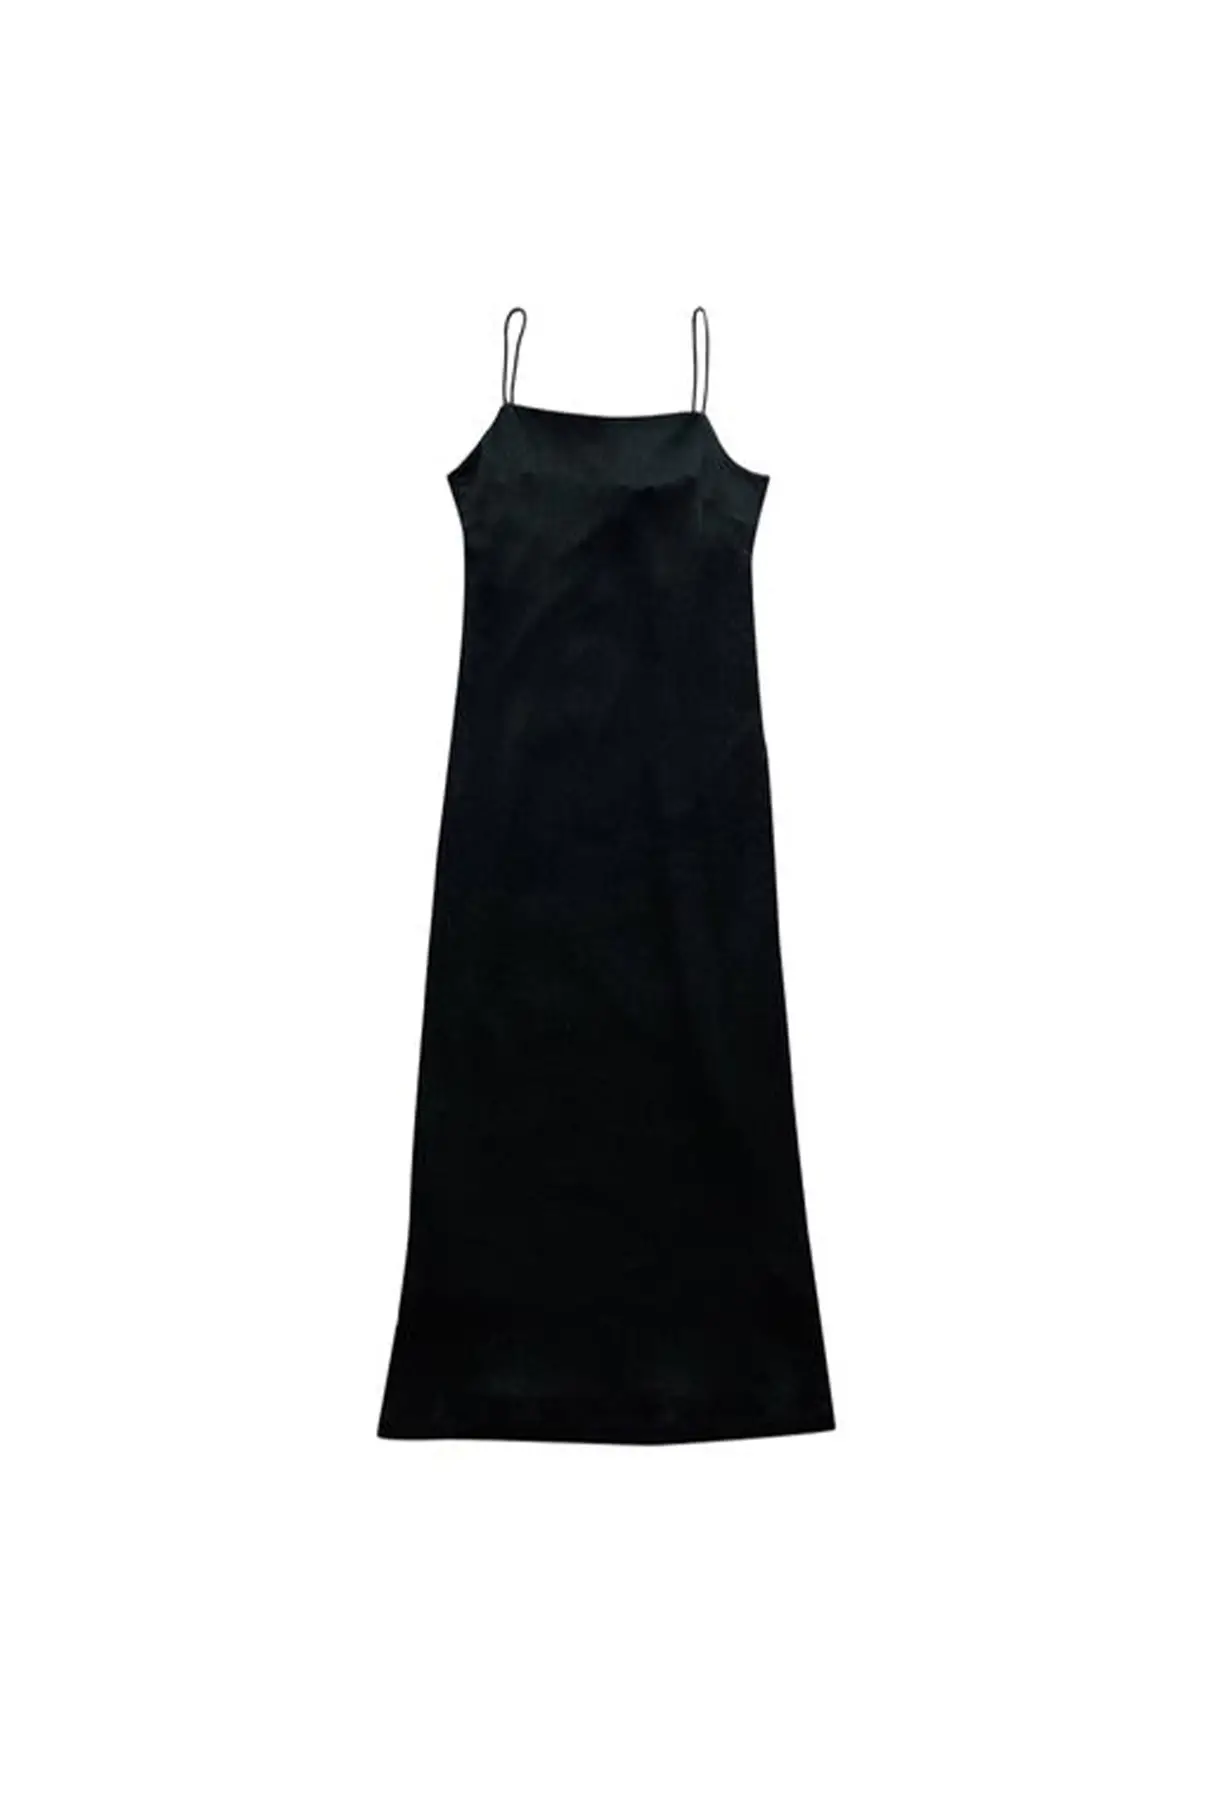 black-silk-zimmermann-dress.jpg